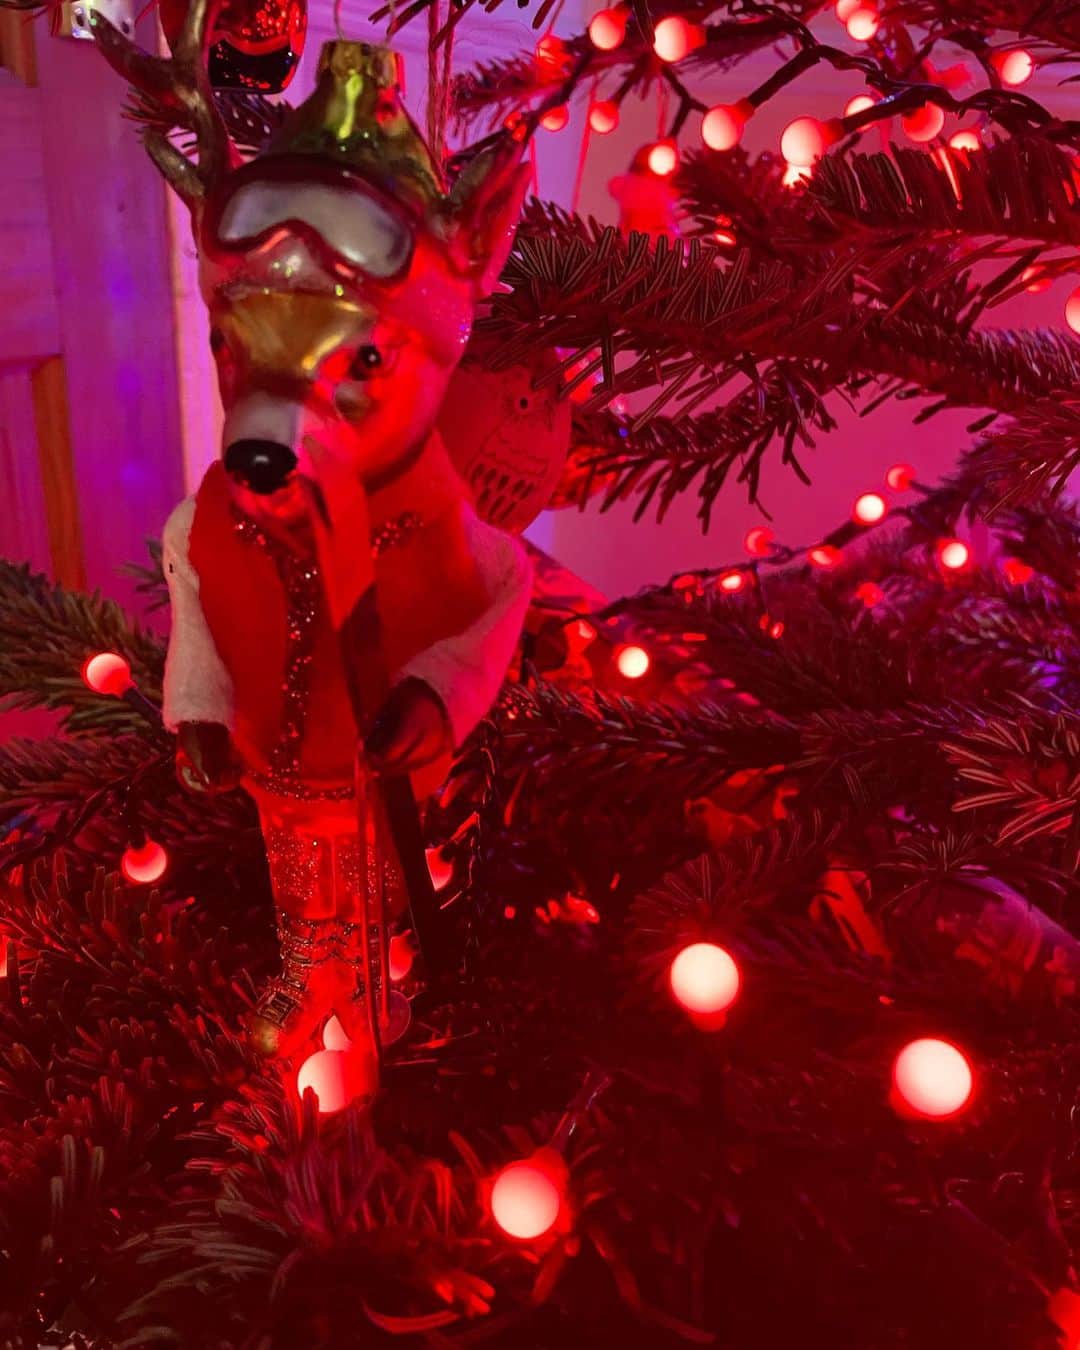 ジョーダン・ロクランのインスタグラム：「Ski Deer: Deer we go again  Hope you all had a lovely festive season. Wishing you a happy 2022!  [ID: Ski deer, a glass Christmas decoration in a the shape of a deer wear a red ski outfit with white sleeves and a green bobble hat. They hold a pair of skis in their left hand. Their left antler is missing. They are nestled in the branches of a Christmas tree, surround by red glowing christmas lights] #IMiscountedSeveralYearsAgoSoThisIsThe8thAppearanceOfSkiDeer#2022」